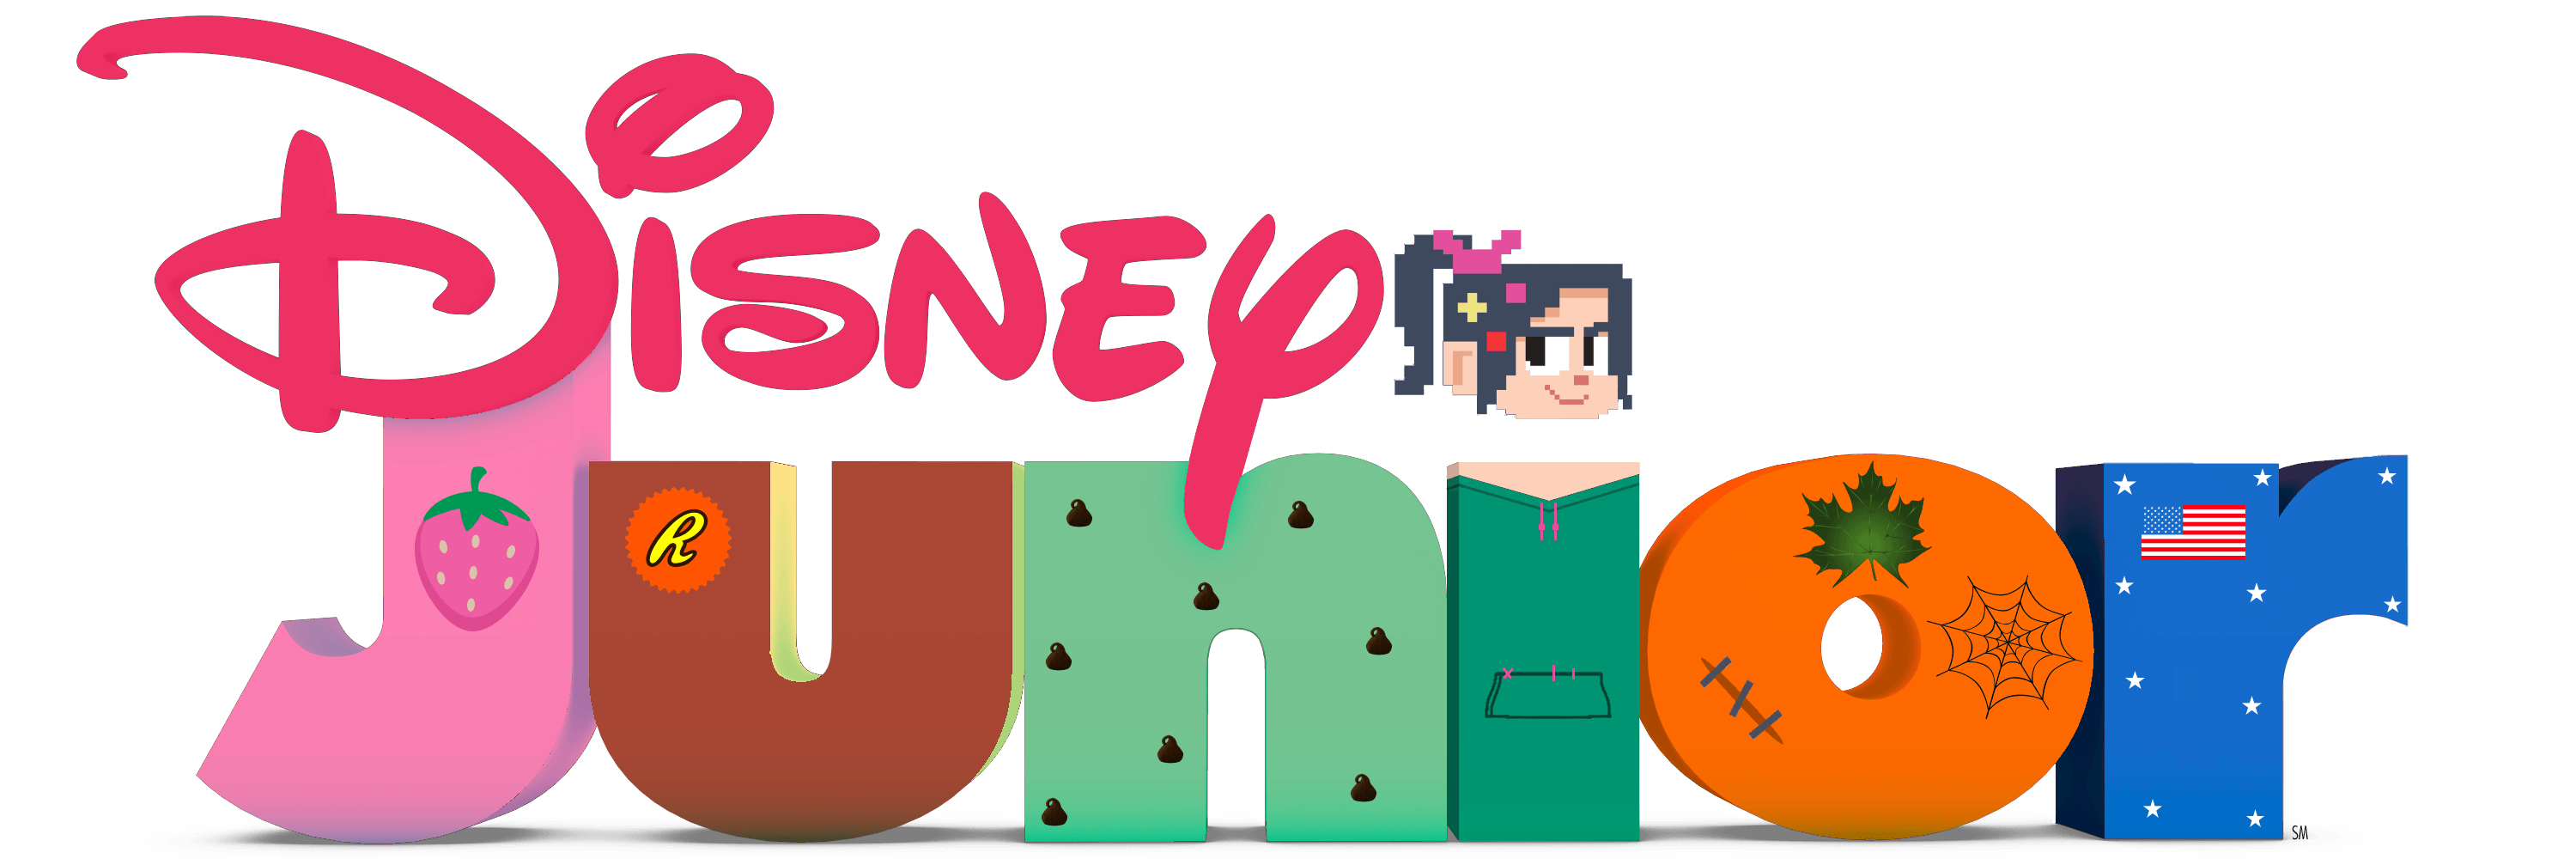 Disney Jr Logo - Disney Junior Logo Variations | Disney Junior Disney Junior (Sugar ...